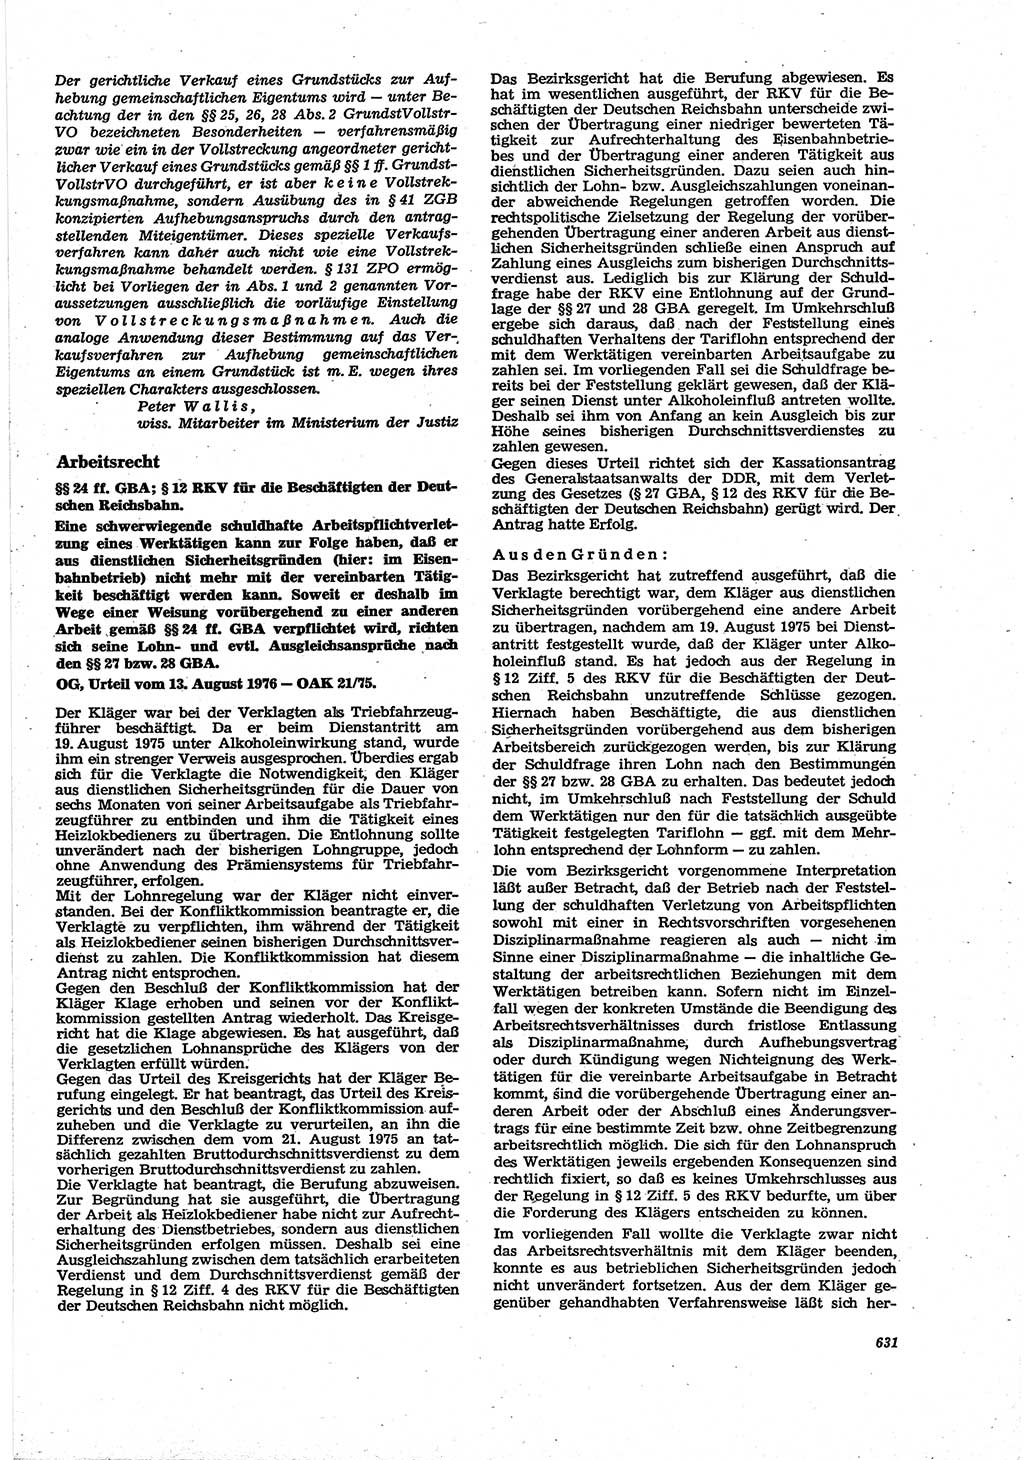 Neue Justiz (NJ), Zeitschrift für Recht und Rechtswissenschaft [Deutsche Demokratische Republik (DDR)], 30. Jahrgang 1976, Seite 631 (NJ DDR 1976, S. 631)